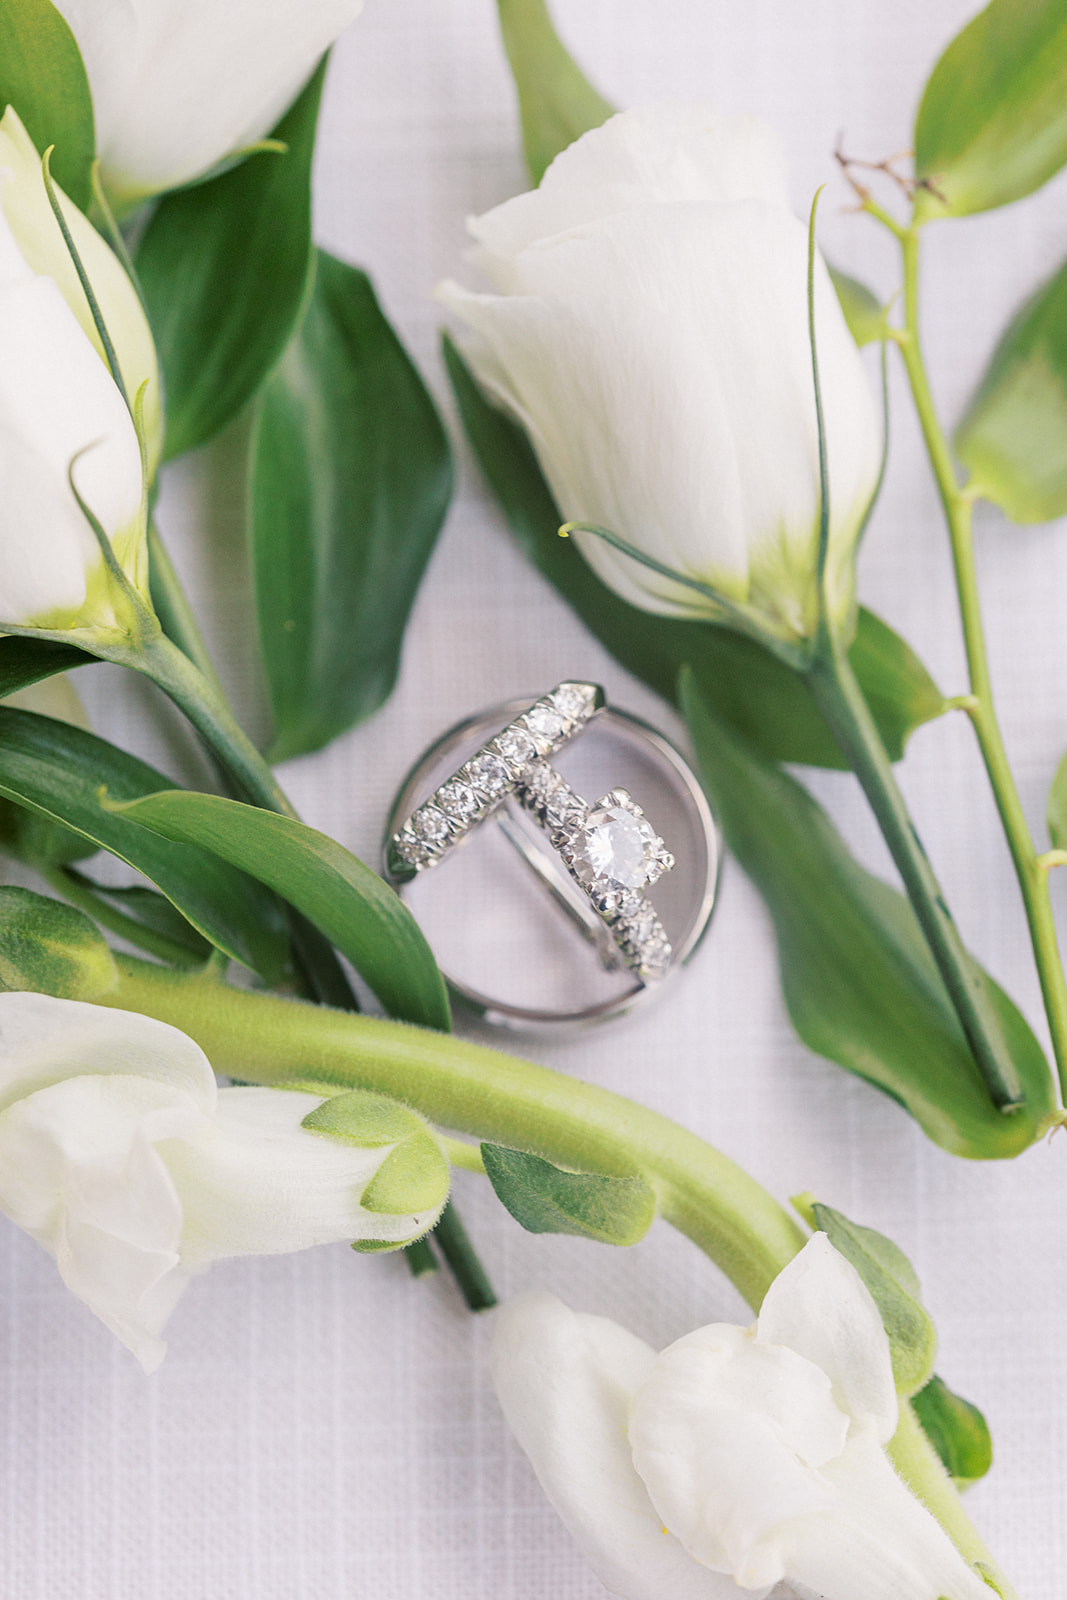 Wedding rings sit among white flowers